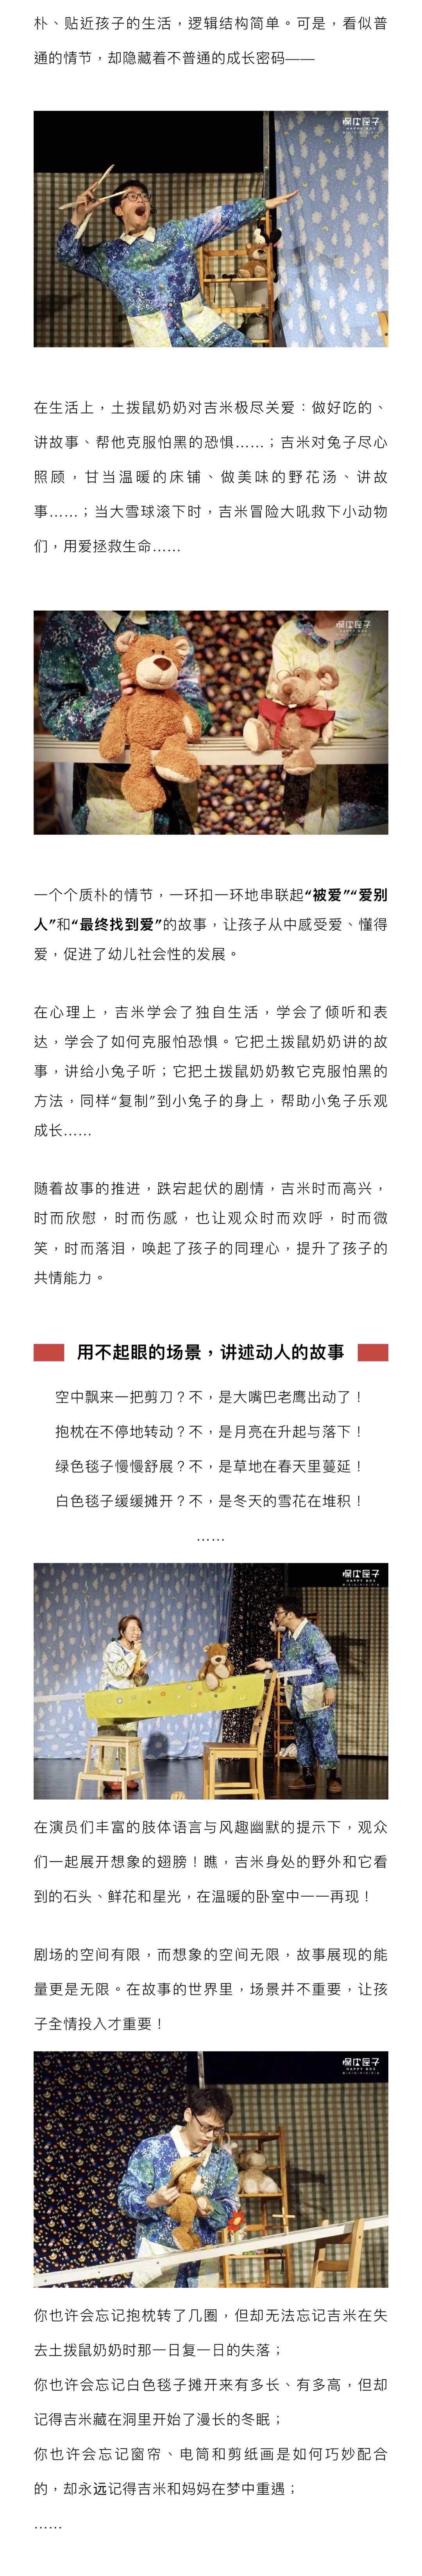 2022【嘿皮匣子】中国香港丨绘本故事剧《我想要爱》-广州站